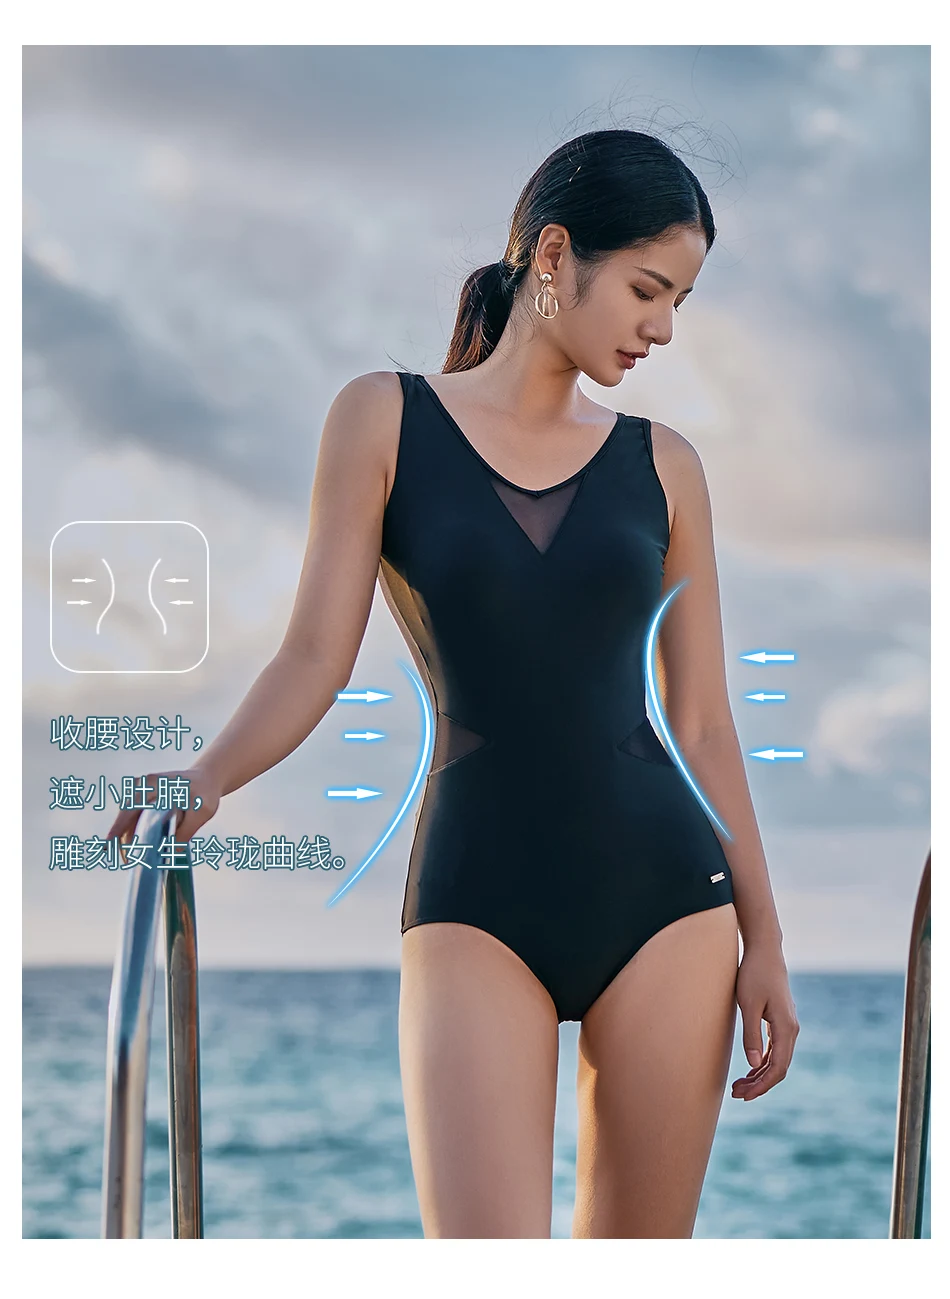 361 женский купальник пуш-ап с открытой спиной, сексуальный треугольный спортивный купальник с сеткой, черный цельный купальник для девушек, горячий весенний купальный костюм для бассейна